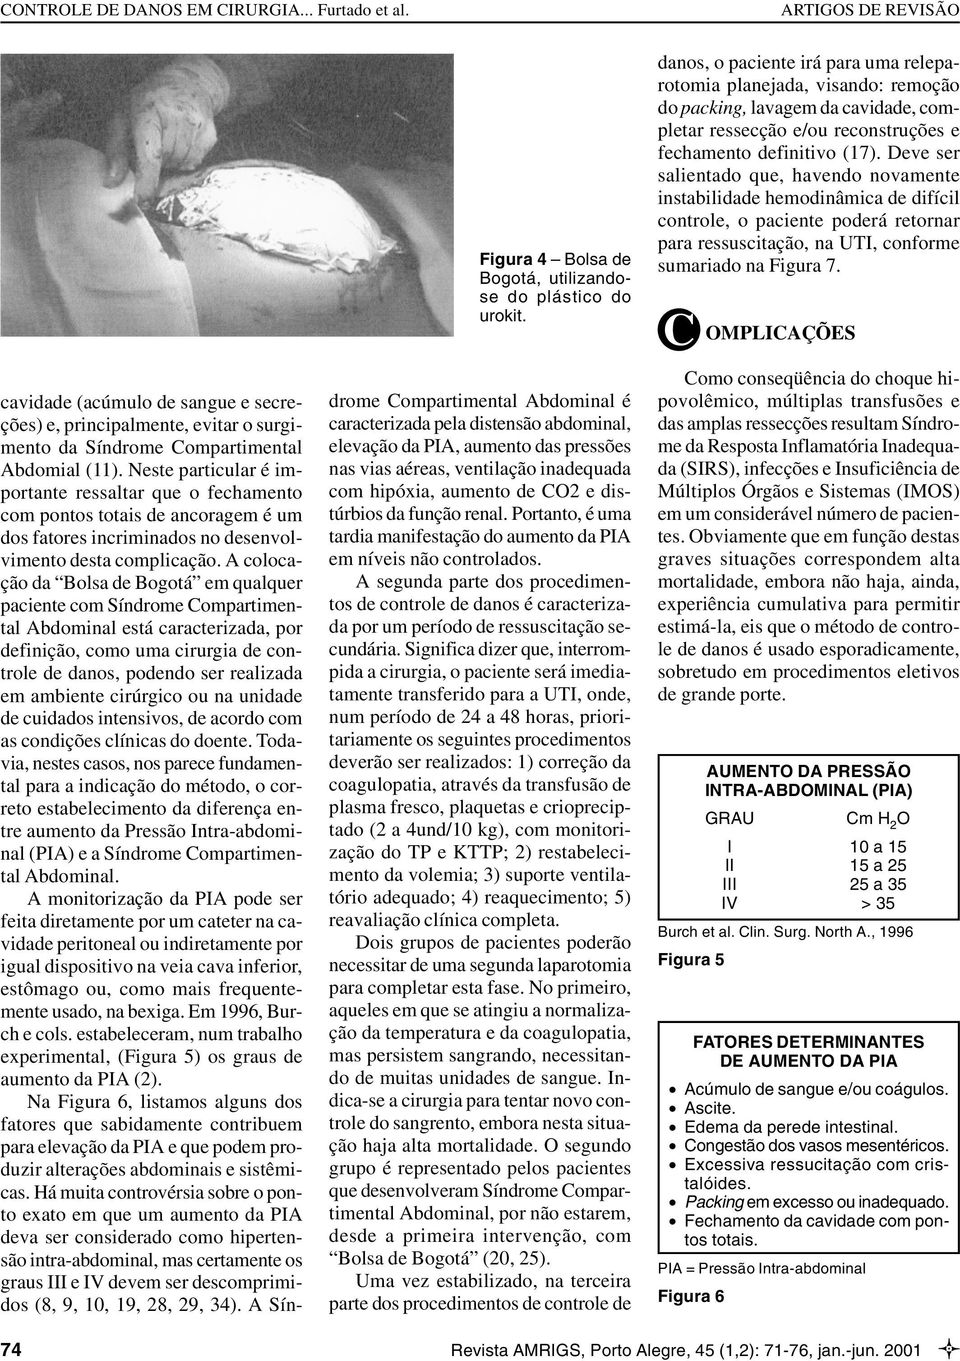 A colocação da Bolsa de Bogotá em qualquer paciente com Síndrome Compartimental Abdominal está caracterizada, por definição, como uma cirurgia de controle de danos, podendo ser realizada em ambiente